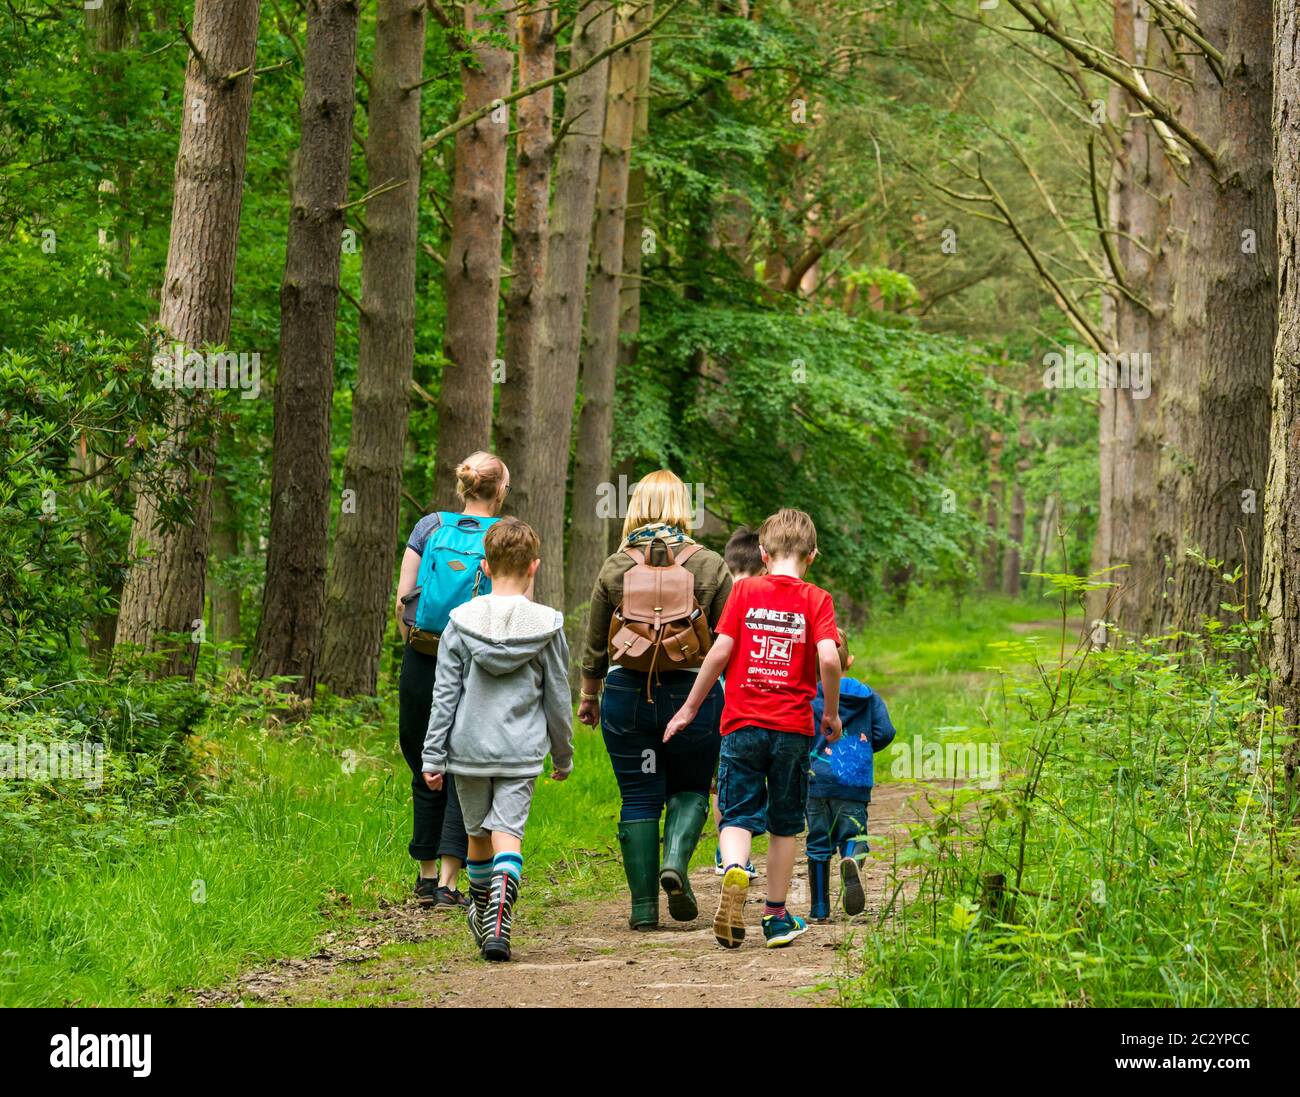 Mères et enfants marchant sur un sentier forestier dans une forêt avec des pins, Binning Wood, East Lothian, Écosse, Royaume-Uni Banque D'Images